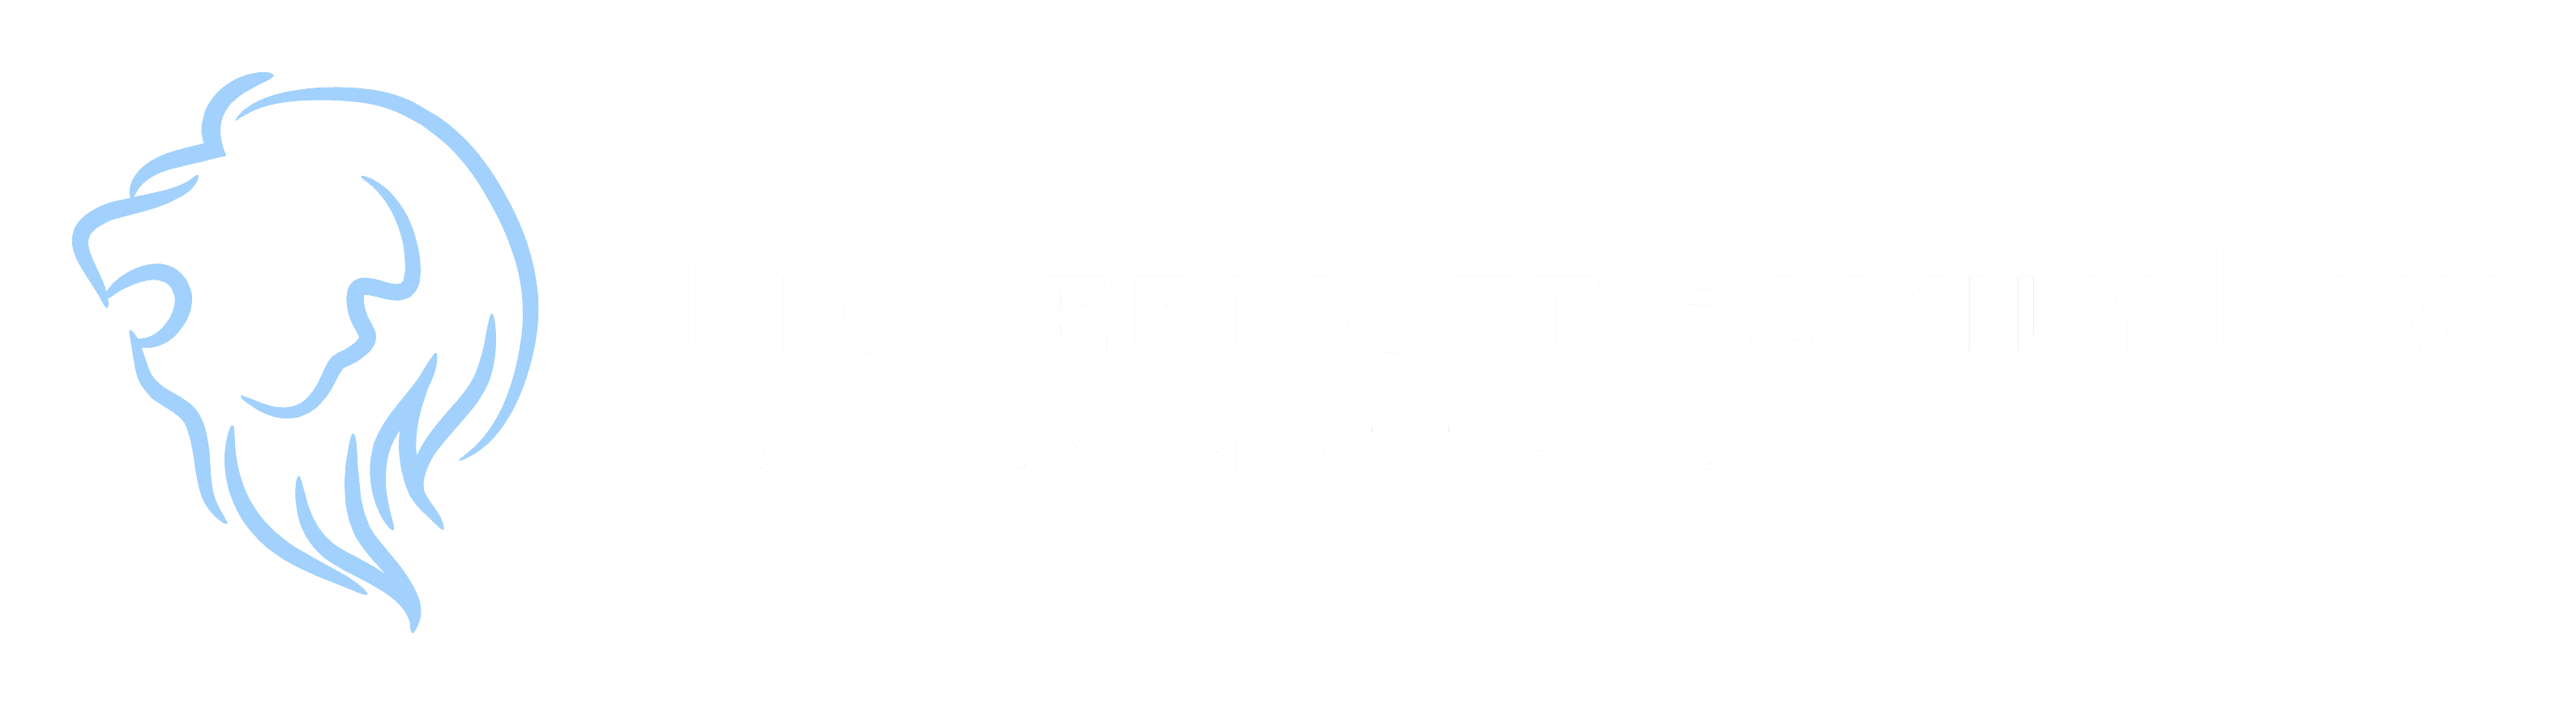 McDermott Family Law